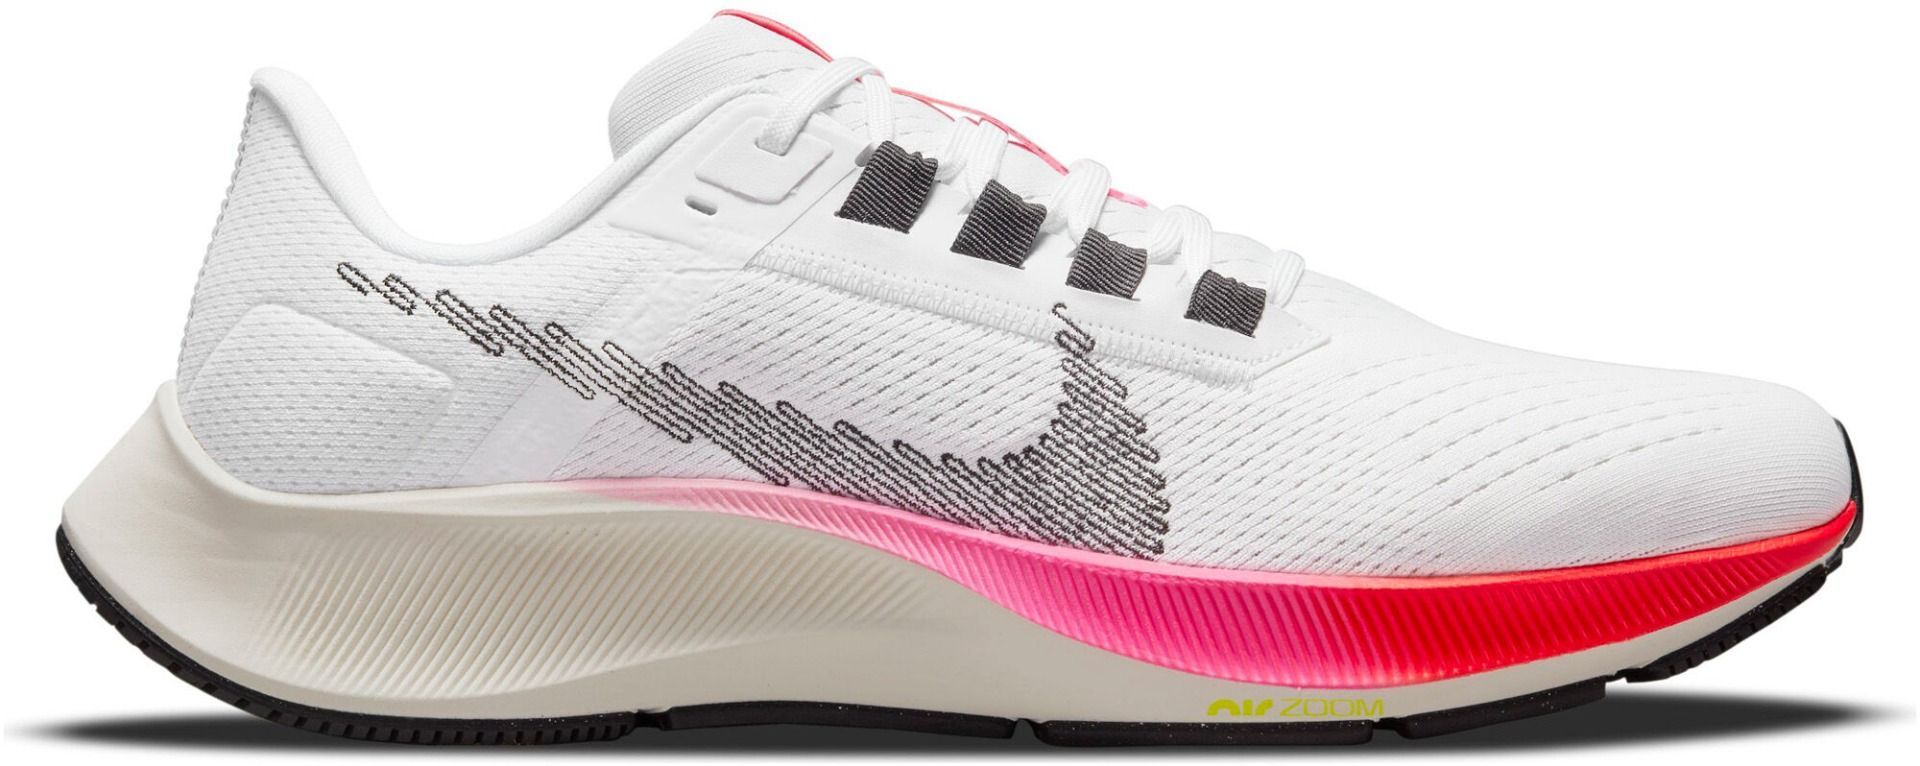 Nike Air Zoom Pegasus 38 - Heren Hardloopschoenen Sportschoenen Running Schoenen Wit DJ5397-100 - Maat EU 42.5 US 9